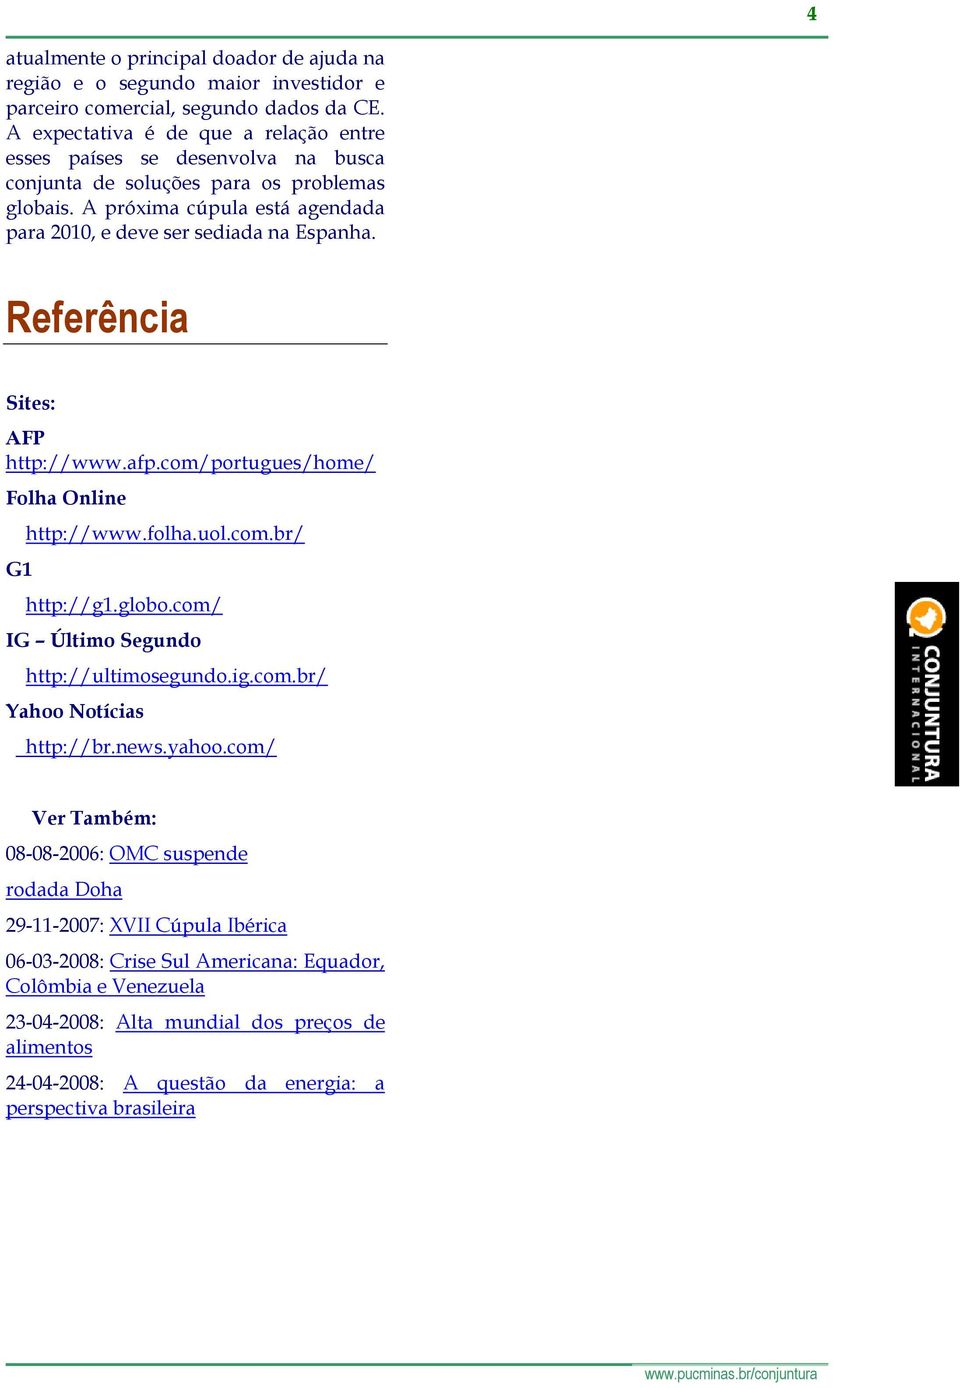 Referência Sites: AFP http://www.afp.com/portugues/home/ Folha Online G1 http://www.folha.uol.com.br/ http://g1.globo.com/ IG Último Segundo http://ultimosegundo.ig.com.br/ Yahoo Notícias http://br.